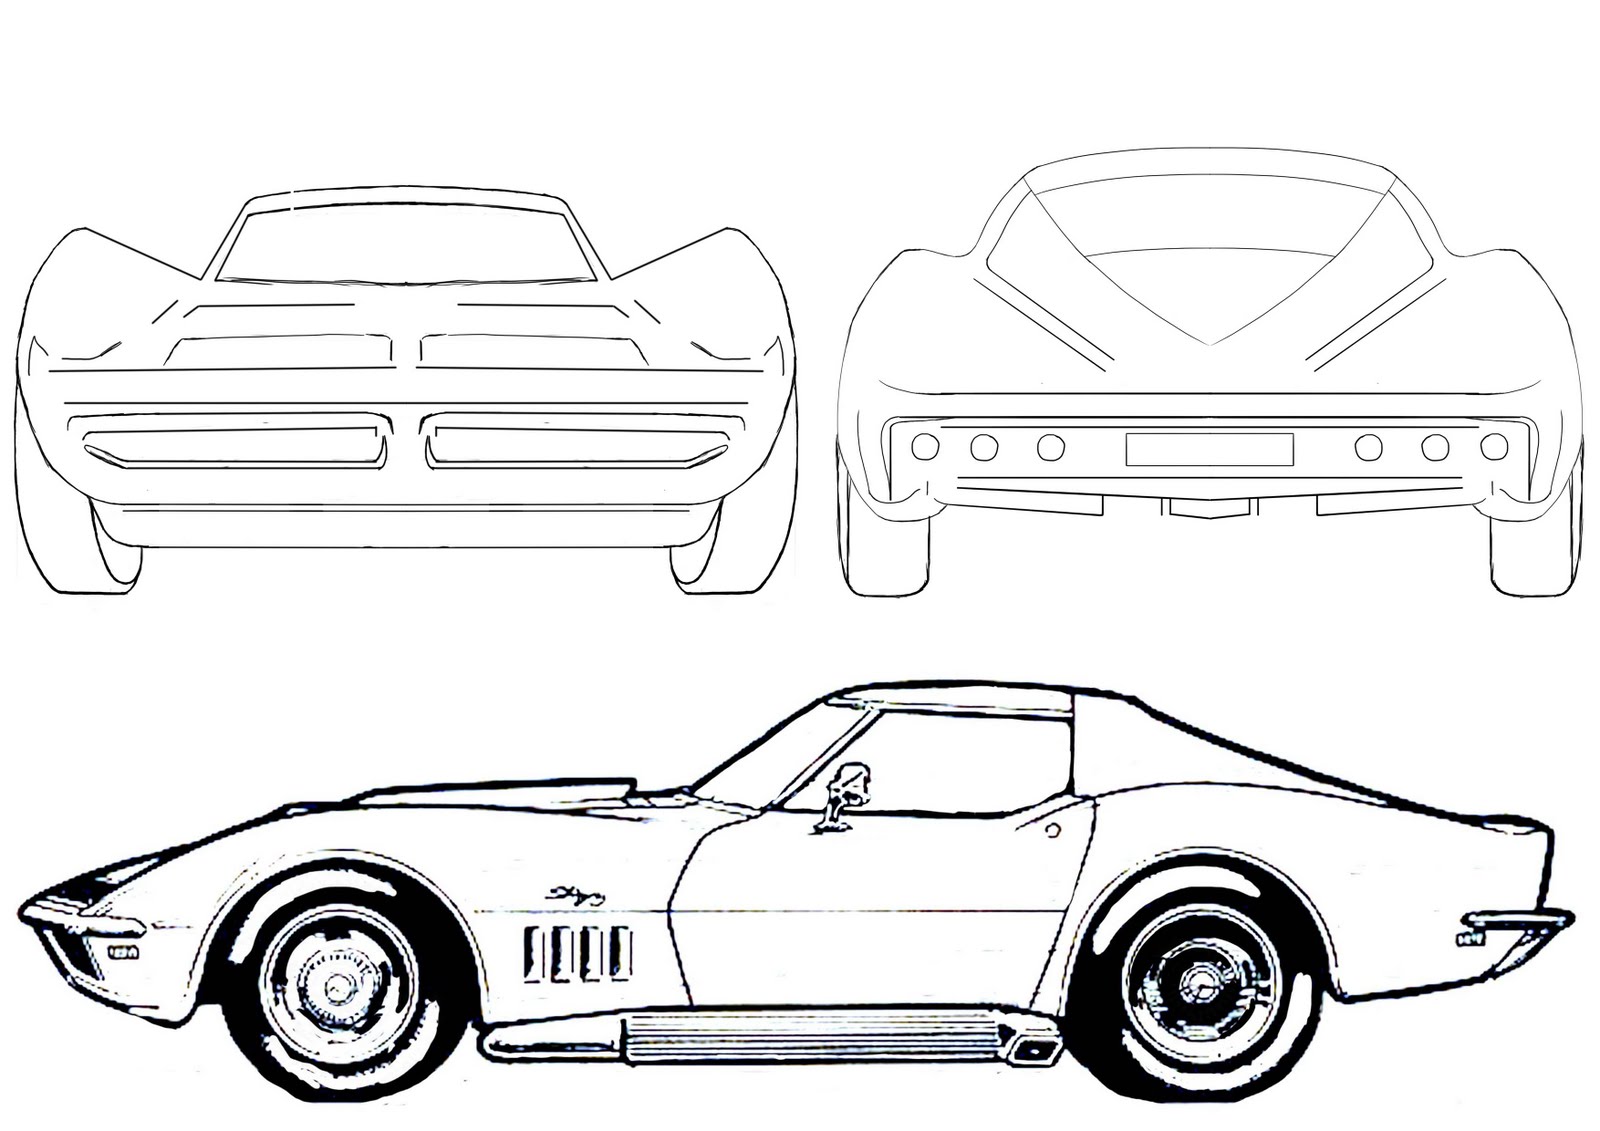 Car drawings - Cars